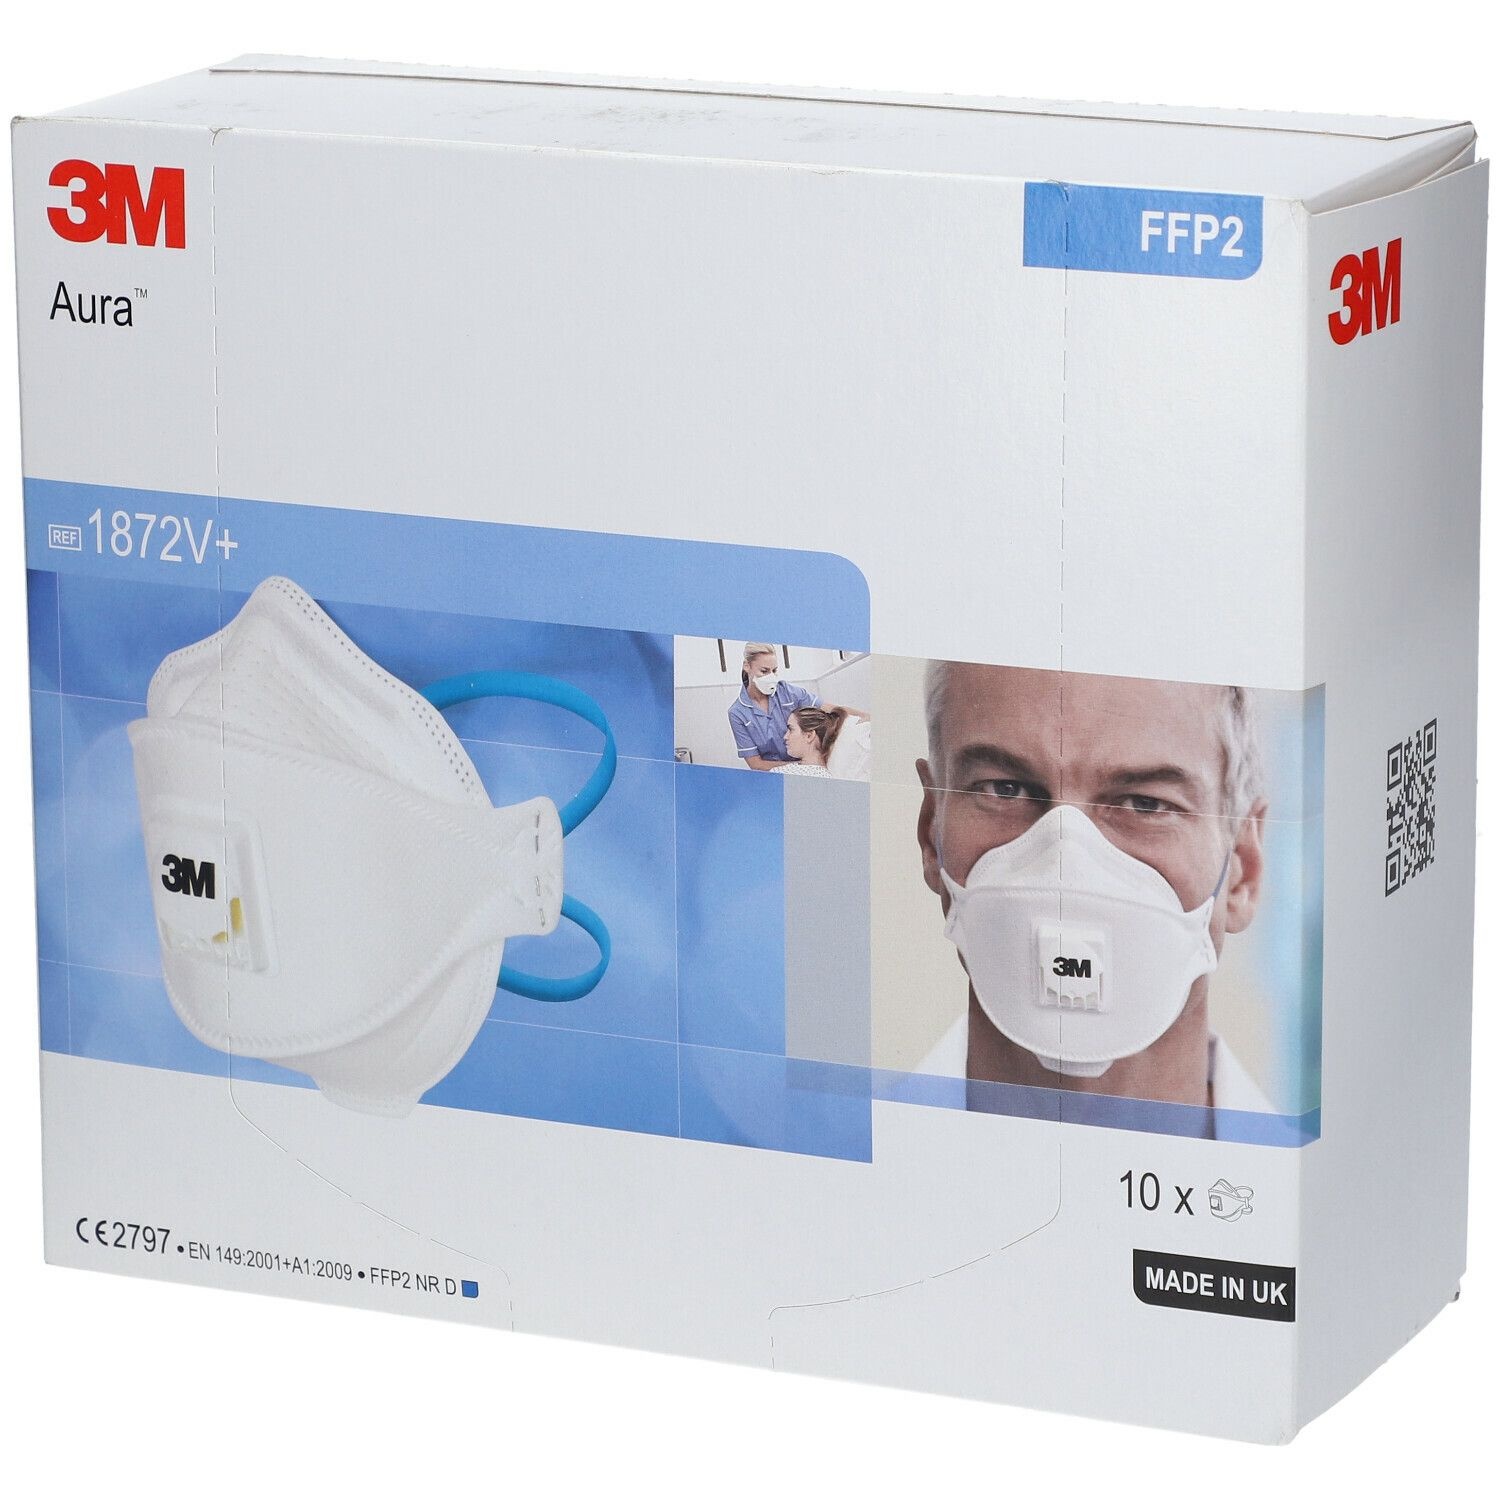 3MTM AuraTM Masque respiratoire médical FFP2 avec soupape 10 pc(s) accessoire(s)